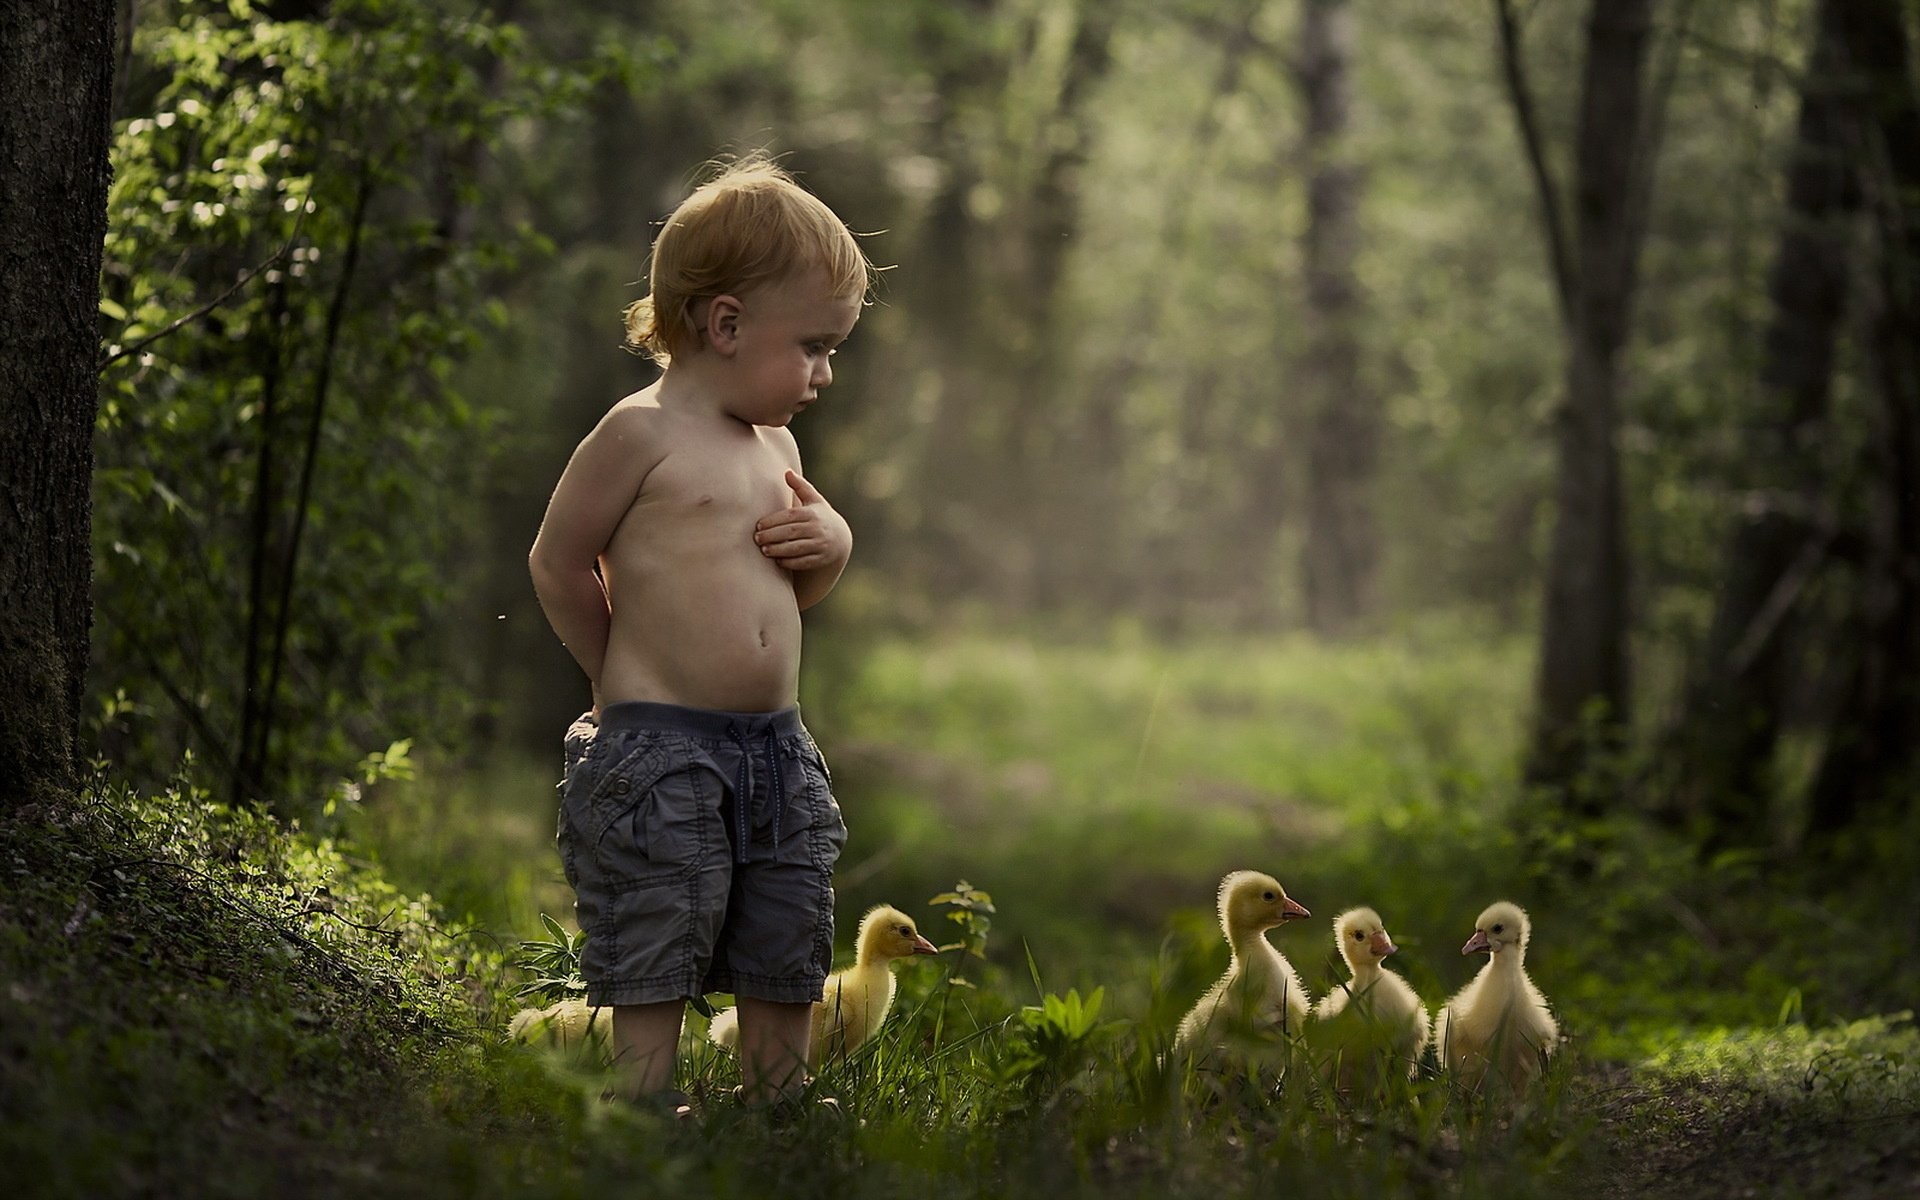 1920x1200 Mood malchik summer duck baby bird child children cute wallpaper |   | 433474 | WallpaperUP